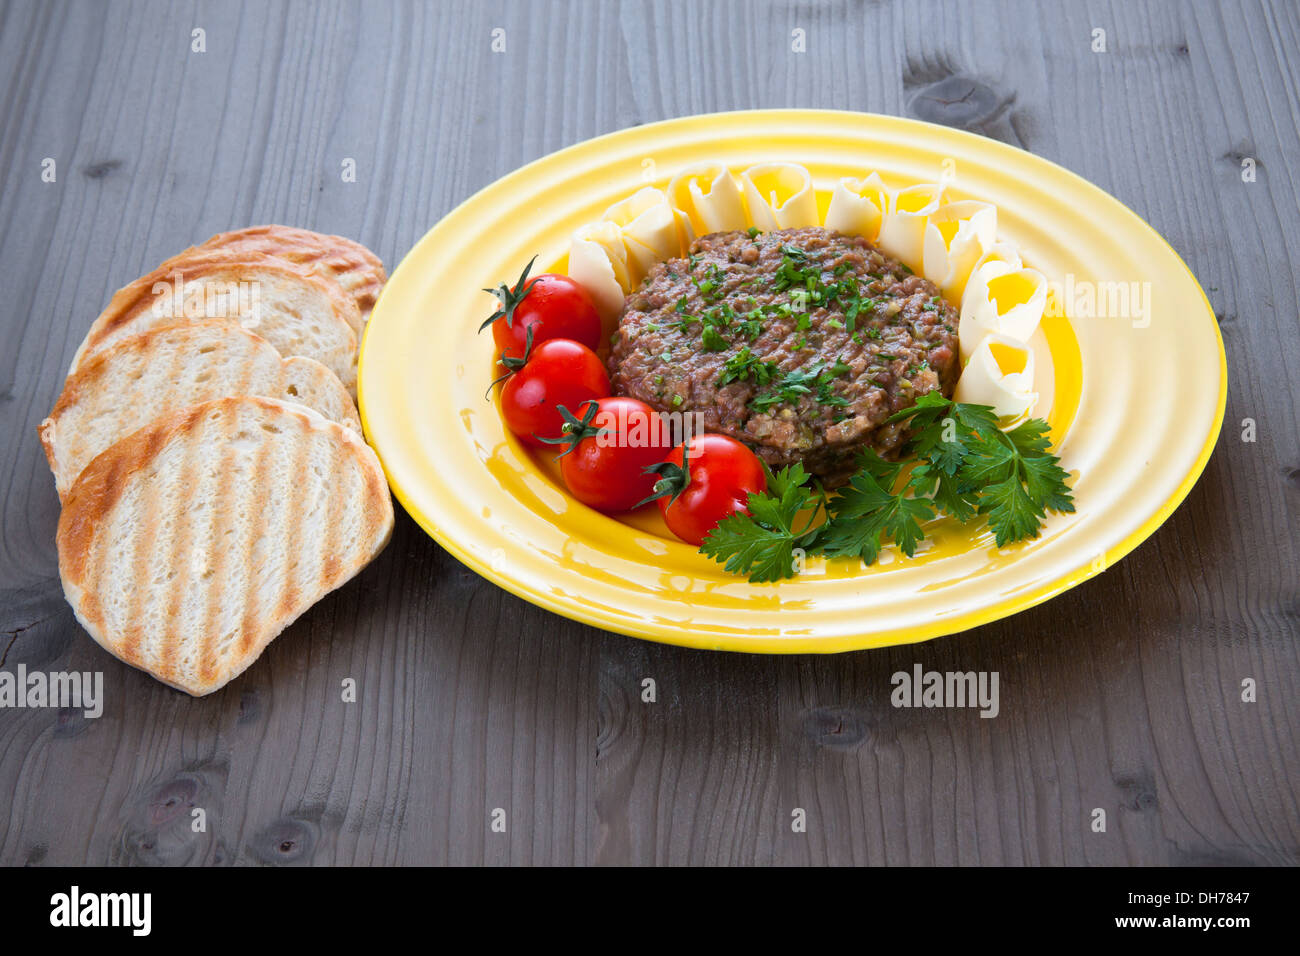 Steak tartare avec du pain grillé, des tomates et du beurre sur la plaque jaune Banque D'Images